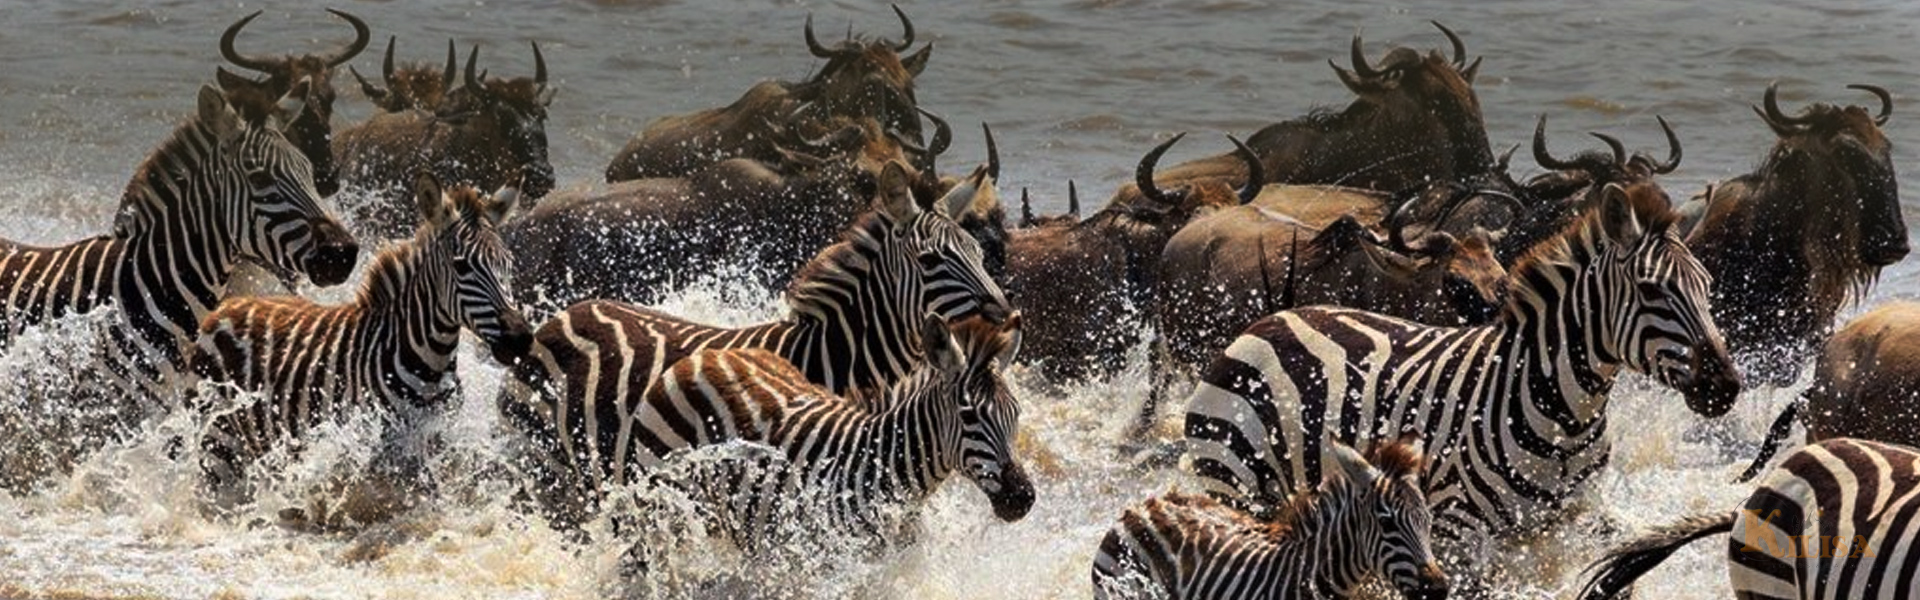 Tanzania Wildlife Safari (Tarangire / Serengeti / Ngorongoro Crater)